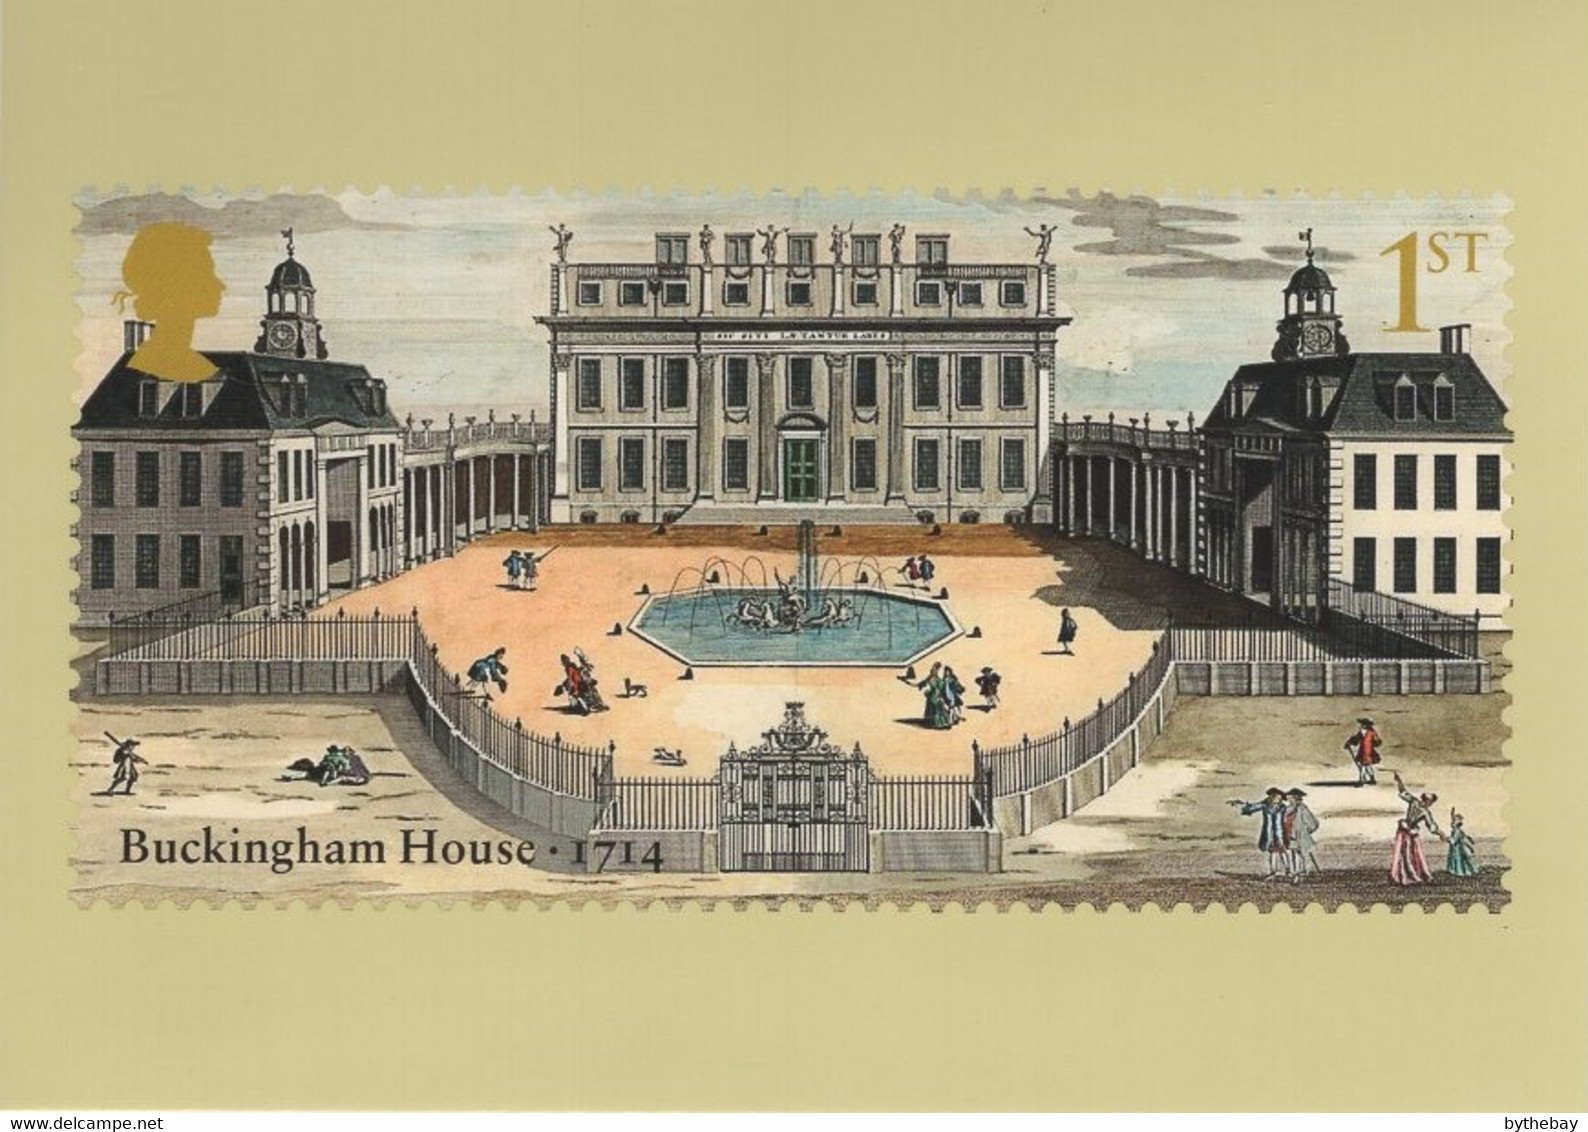 Great Britain 2014 PHQ Card Sc 3283 1st Buckingham House 1714 - Carte PHQ